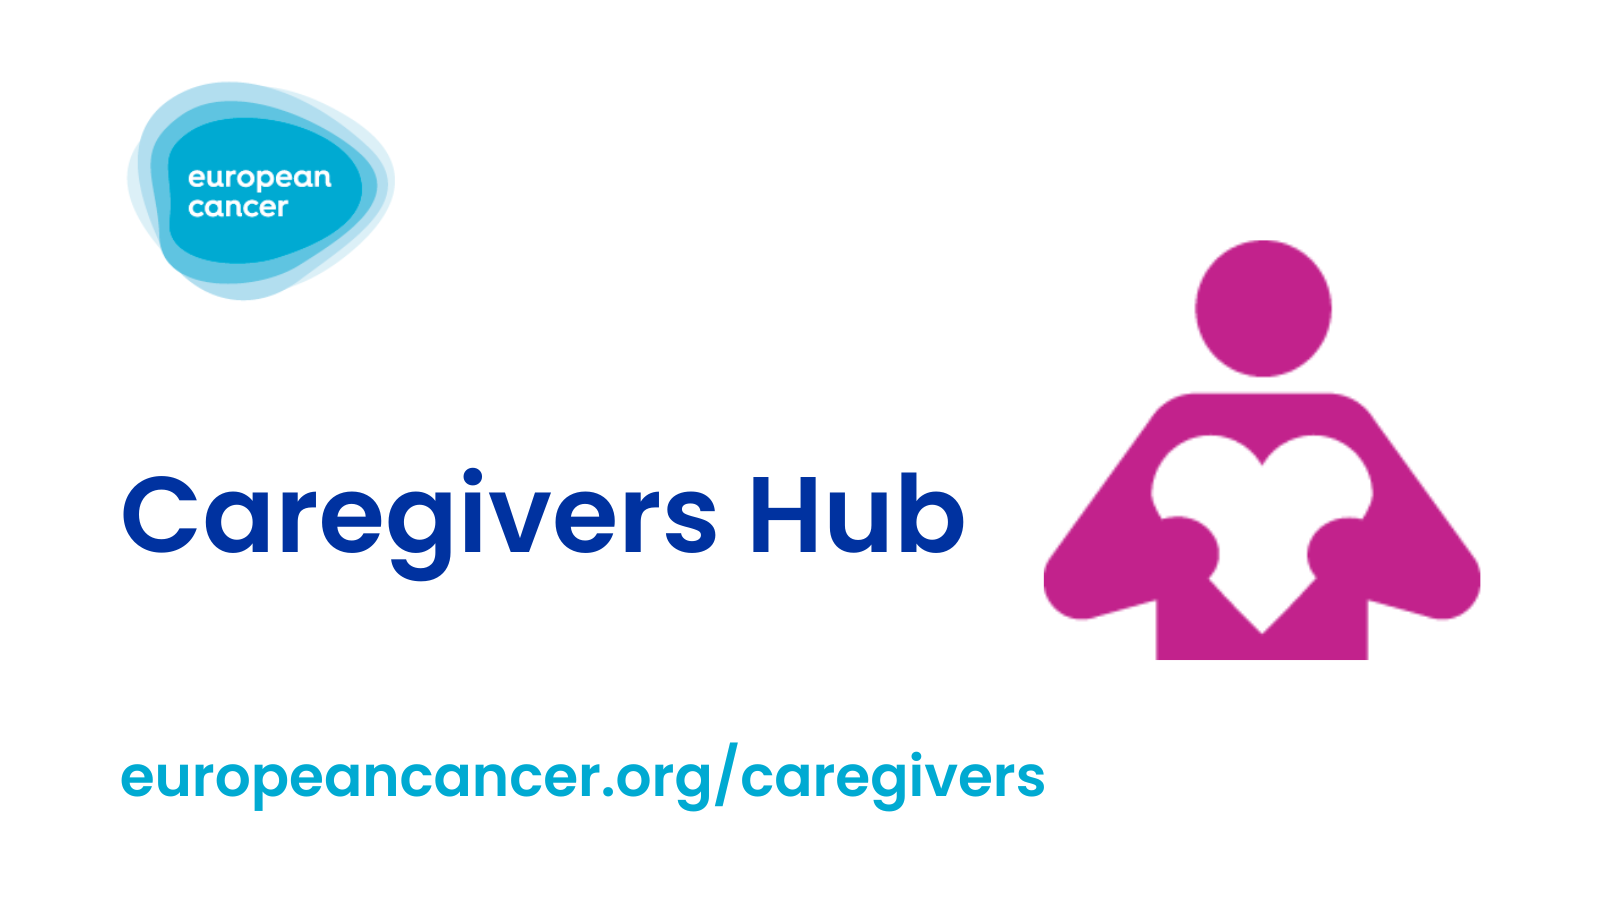 Caregivers Hub